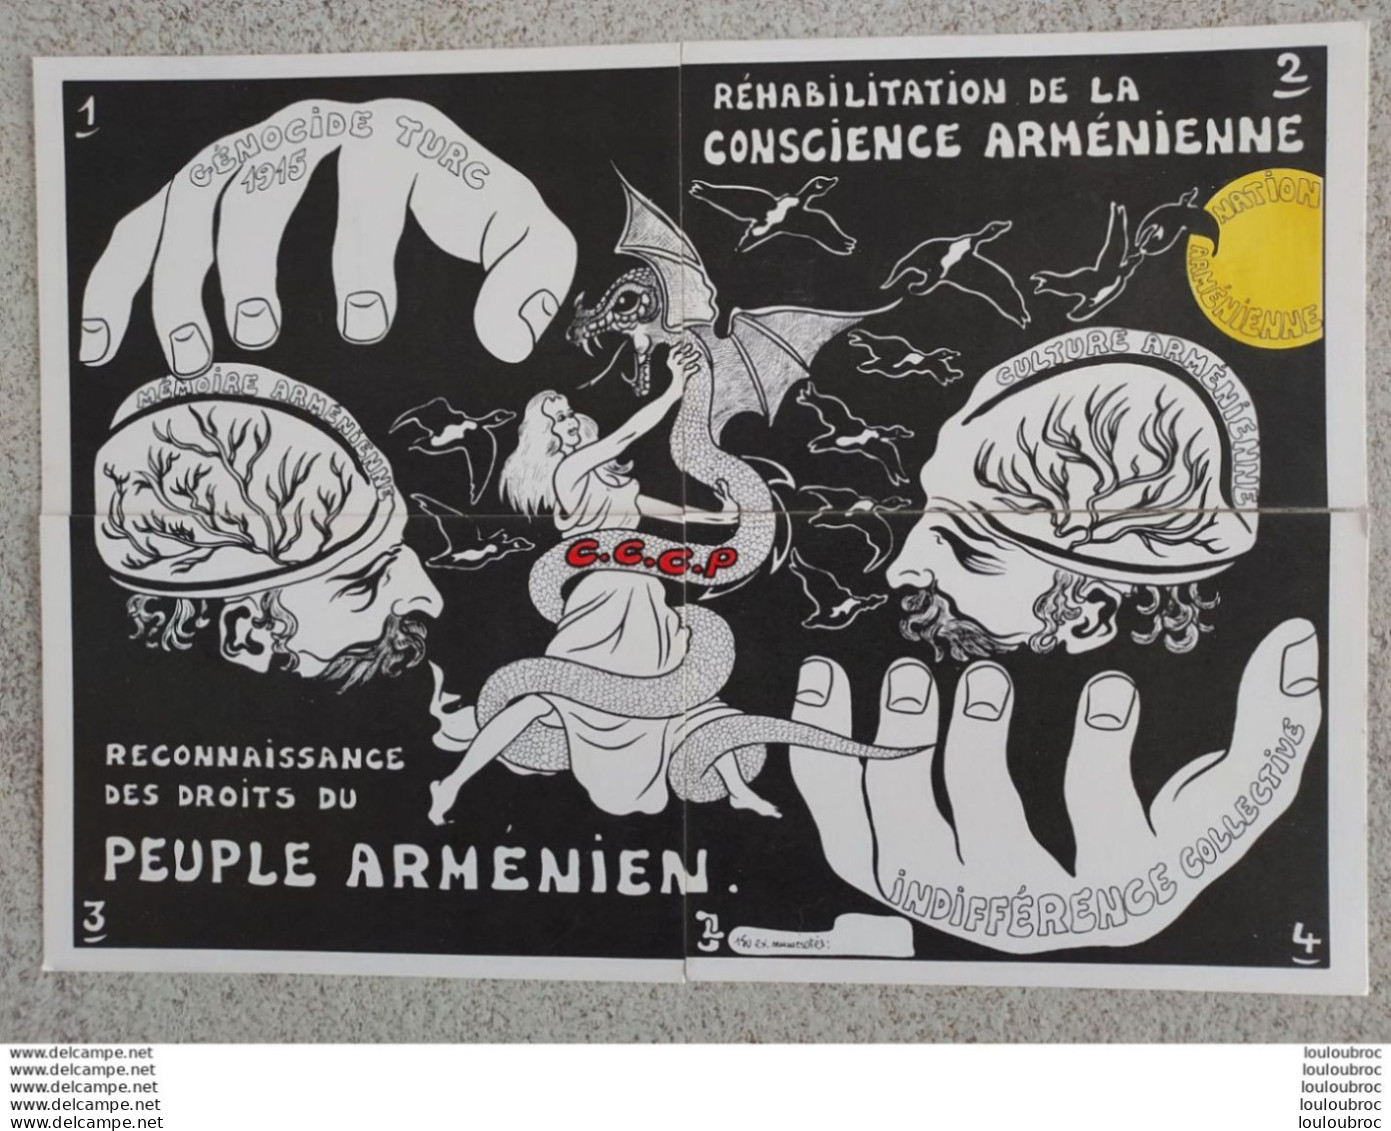 4 CARTES RECONNAISSANCE DES DROITS DU PEUPLE ARMENIEN  GENOCIDE TURC 1915 CARTES FORMANT PUZZLE CONSCIENCE ARMENIENNE - Satirical